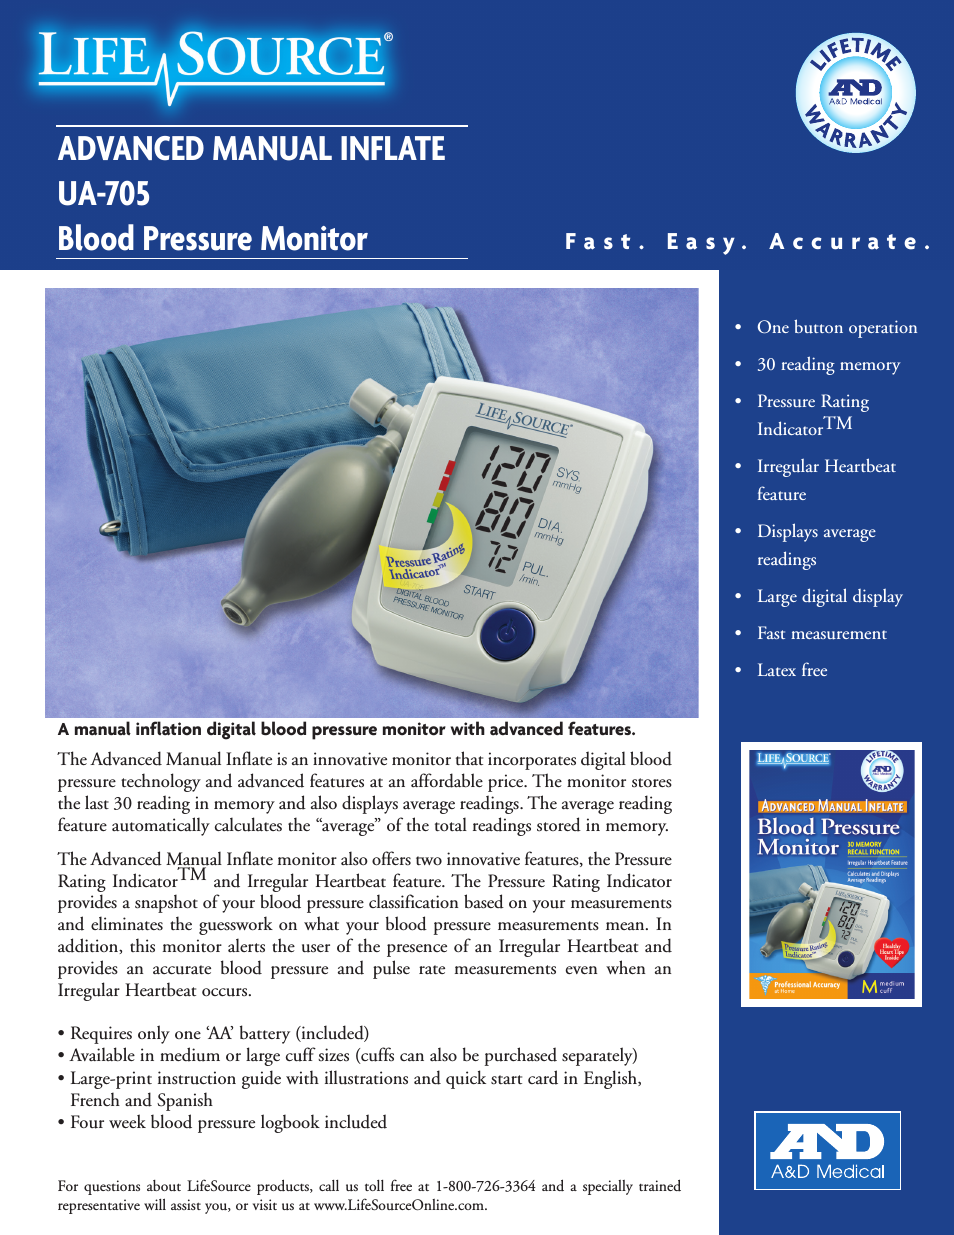 Advanced Manual Inflate Blood Pressure Monitor UA-705